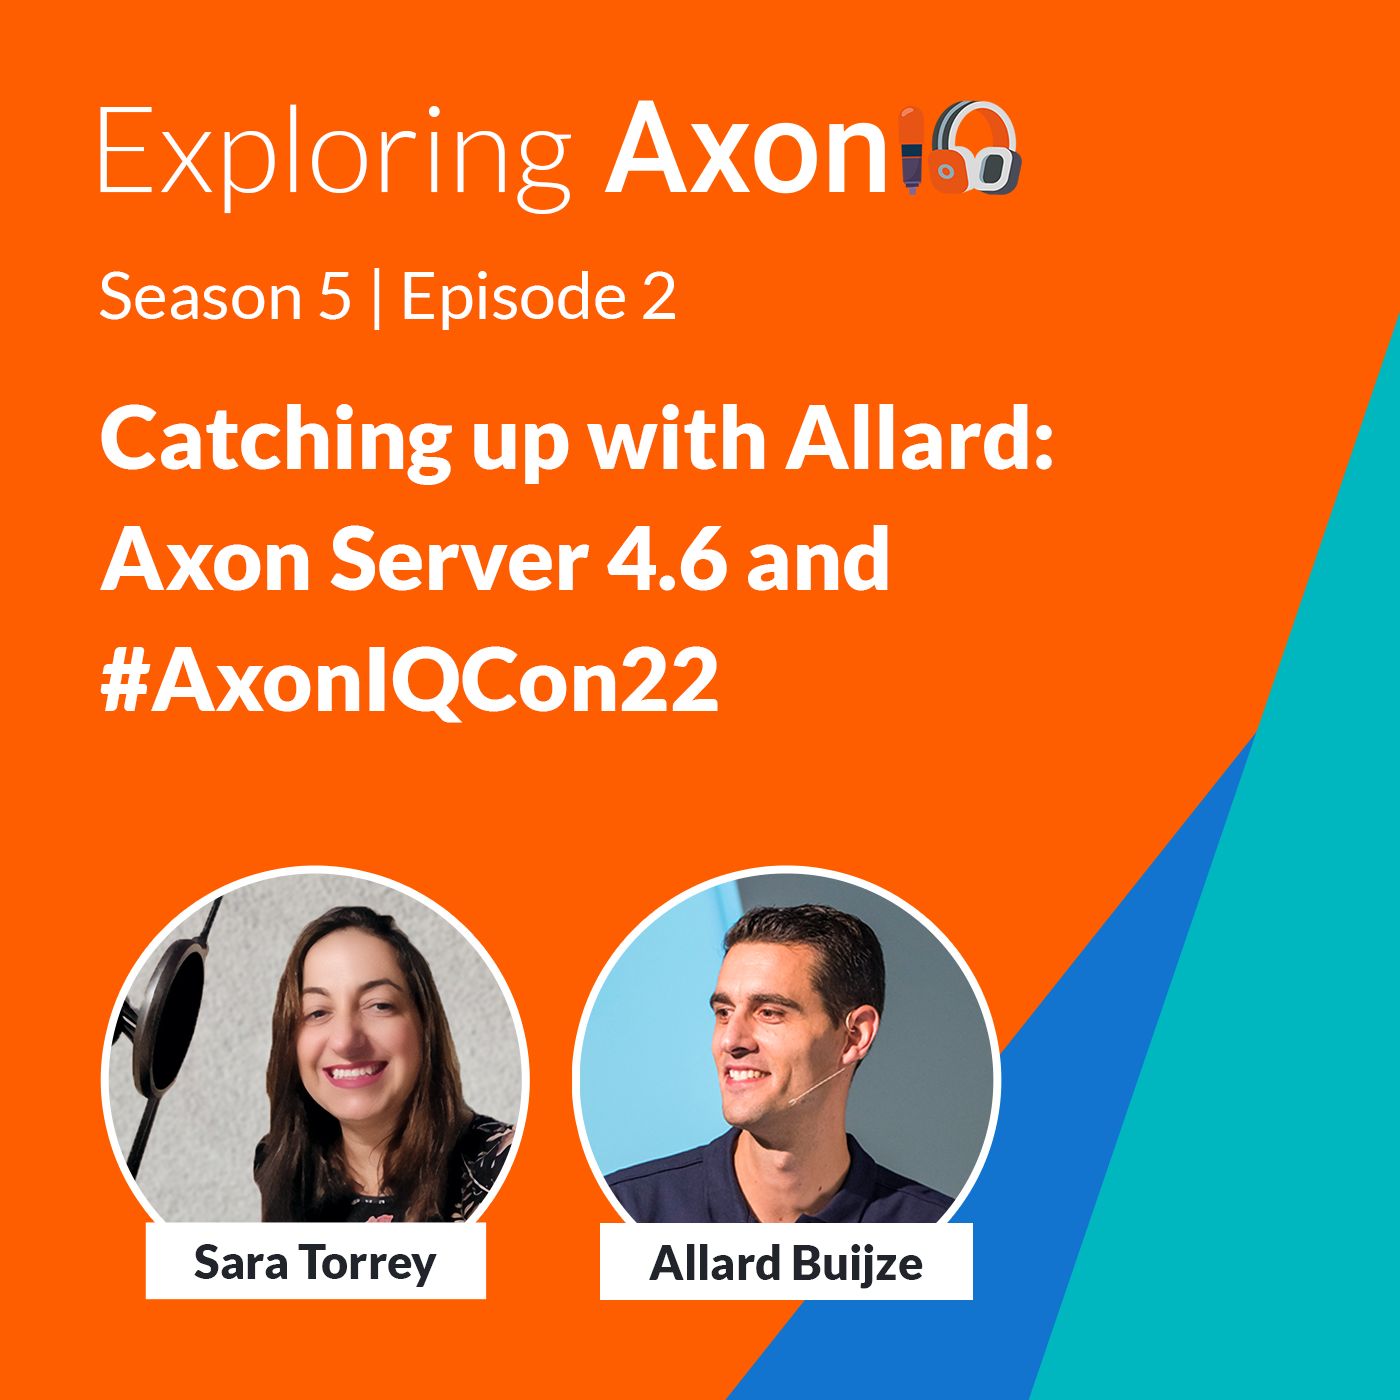 Axon Server 4.6 & AxonIQ Conference ’22 - with Allard